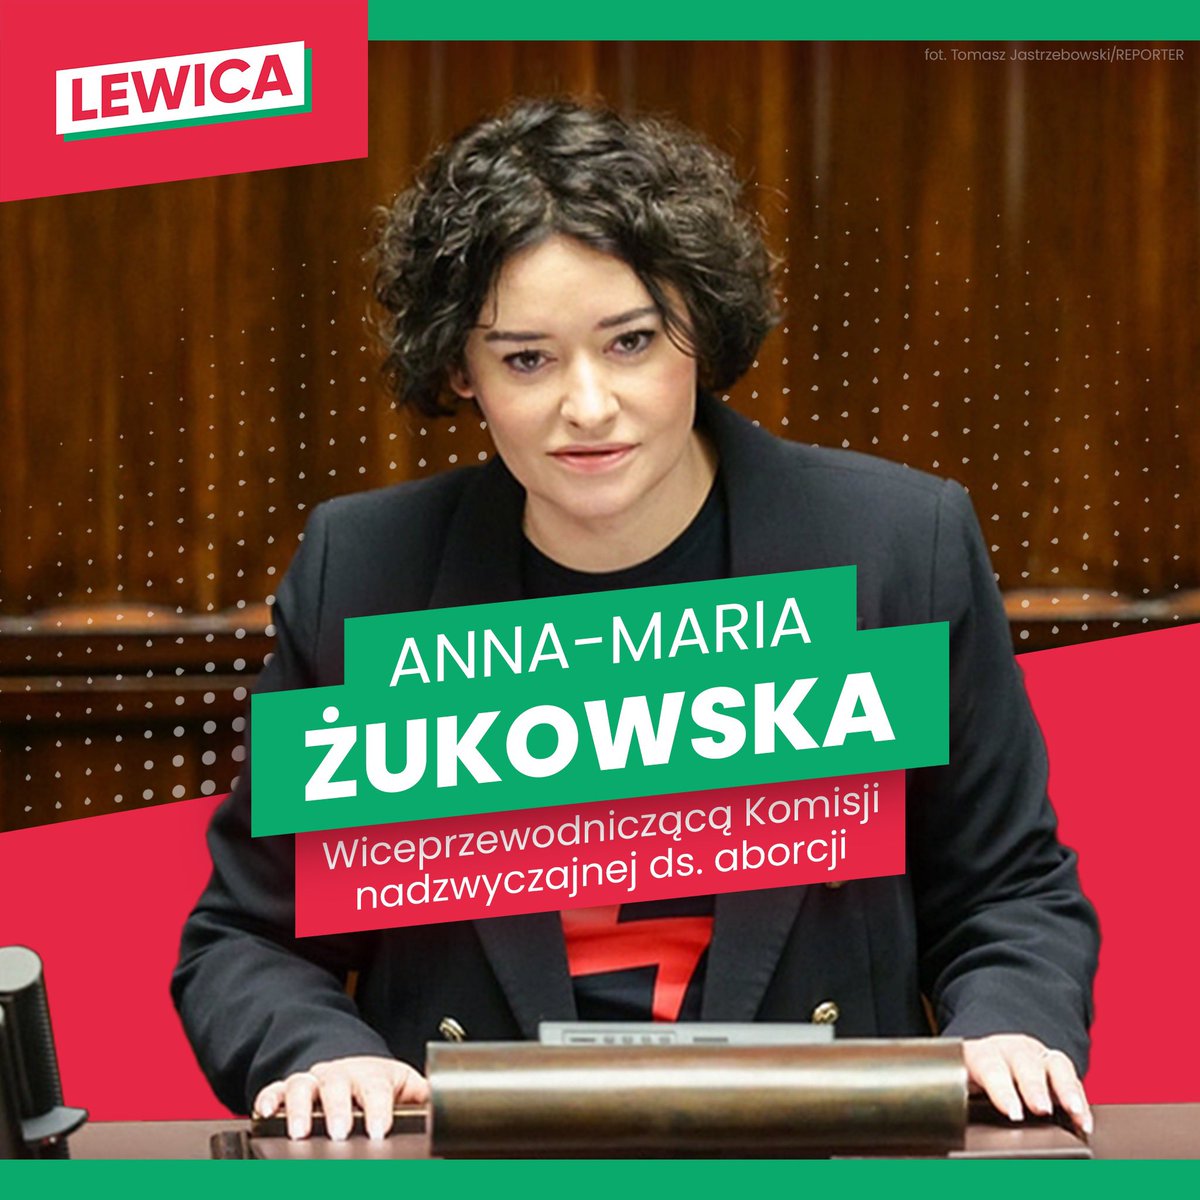 📣 @AM_Zukowska wiceprzewodniczącą Komisji nadzwyczajnej ds. aborcji! Gratulujemy! 💚